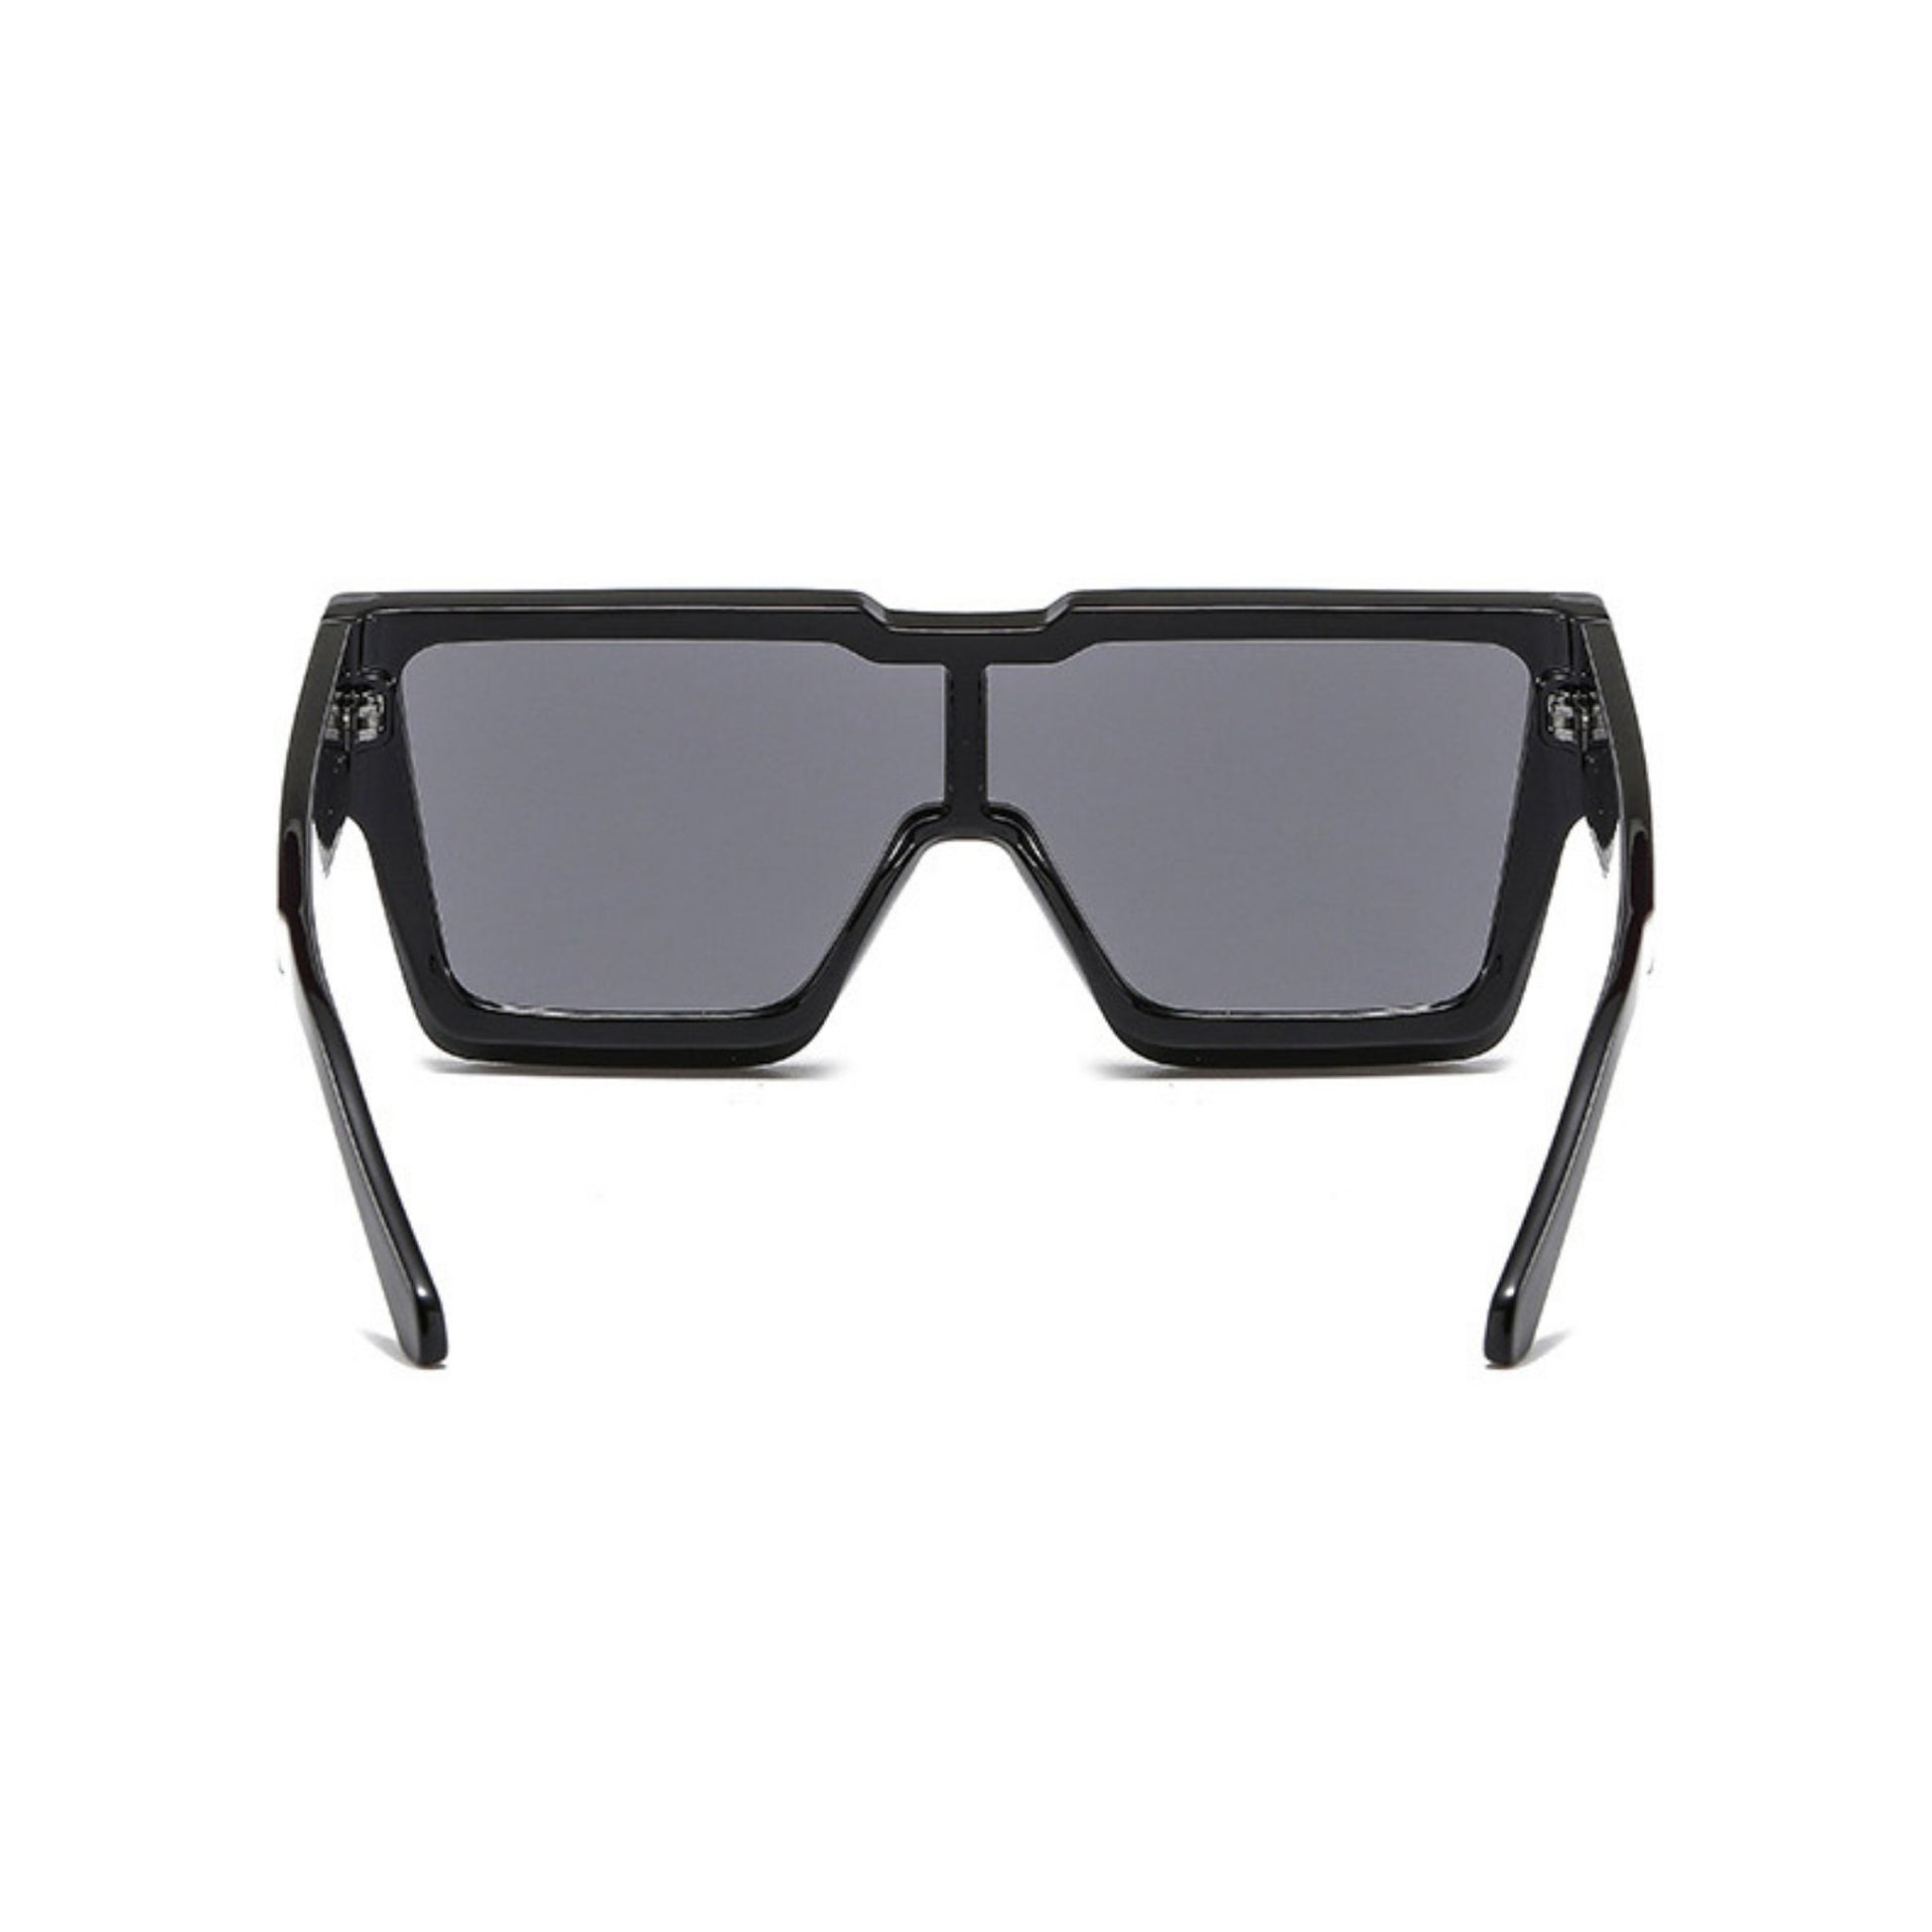 Γυαλιά ηλίου Toronto (Μάσκα) από την Exposure Sunglasses με προστασία UV400 με μαύρο σκελετό και μαύρο φακό.Πίσω όψη.